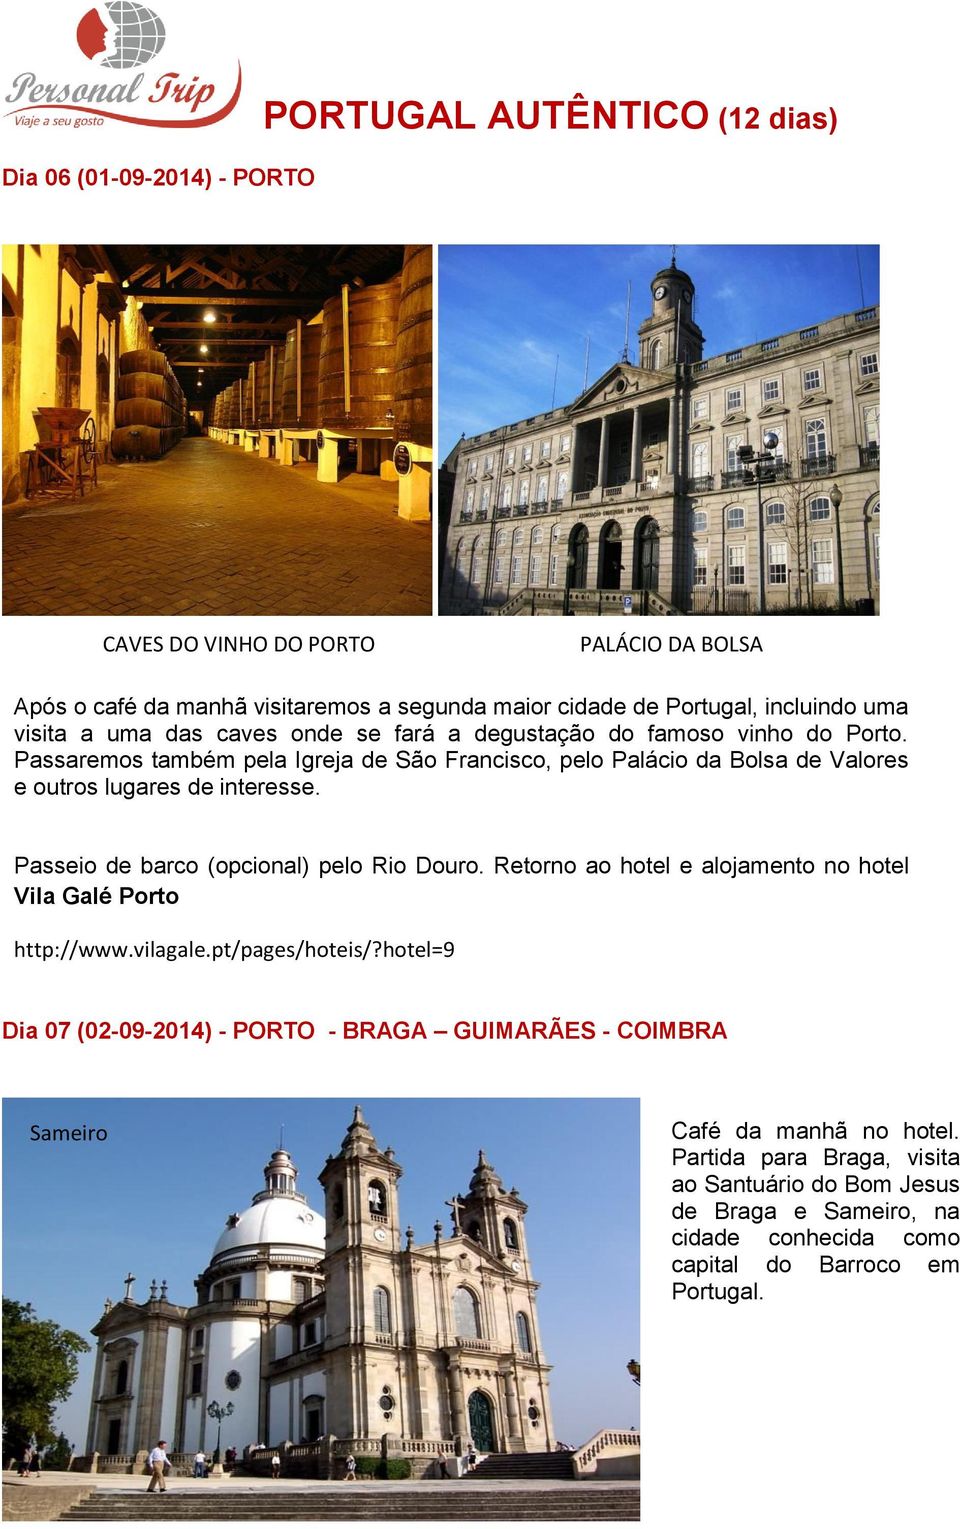 Passaremos também pela Igreja de São Francisco, pelo Palácio da Bolsa de Valores e outros lugares de interesse. Passeio de barco (opcional) pelo Rio Douro.